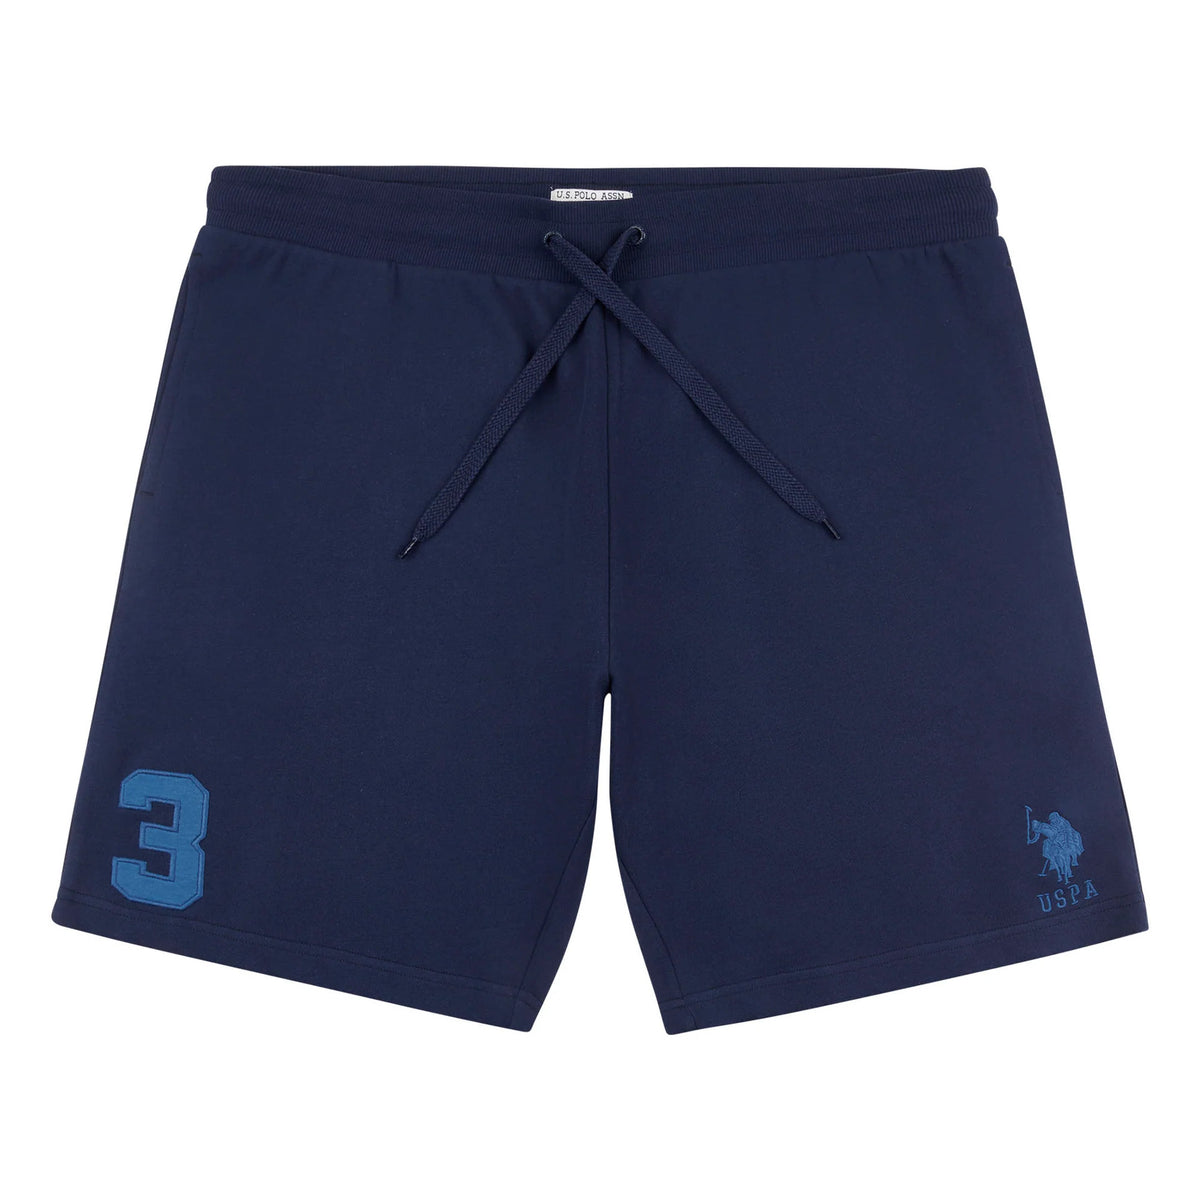 Player 3 Jersey Sweat Shorts